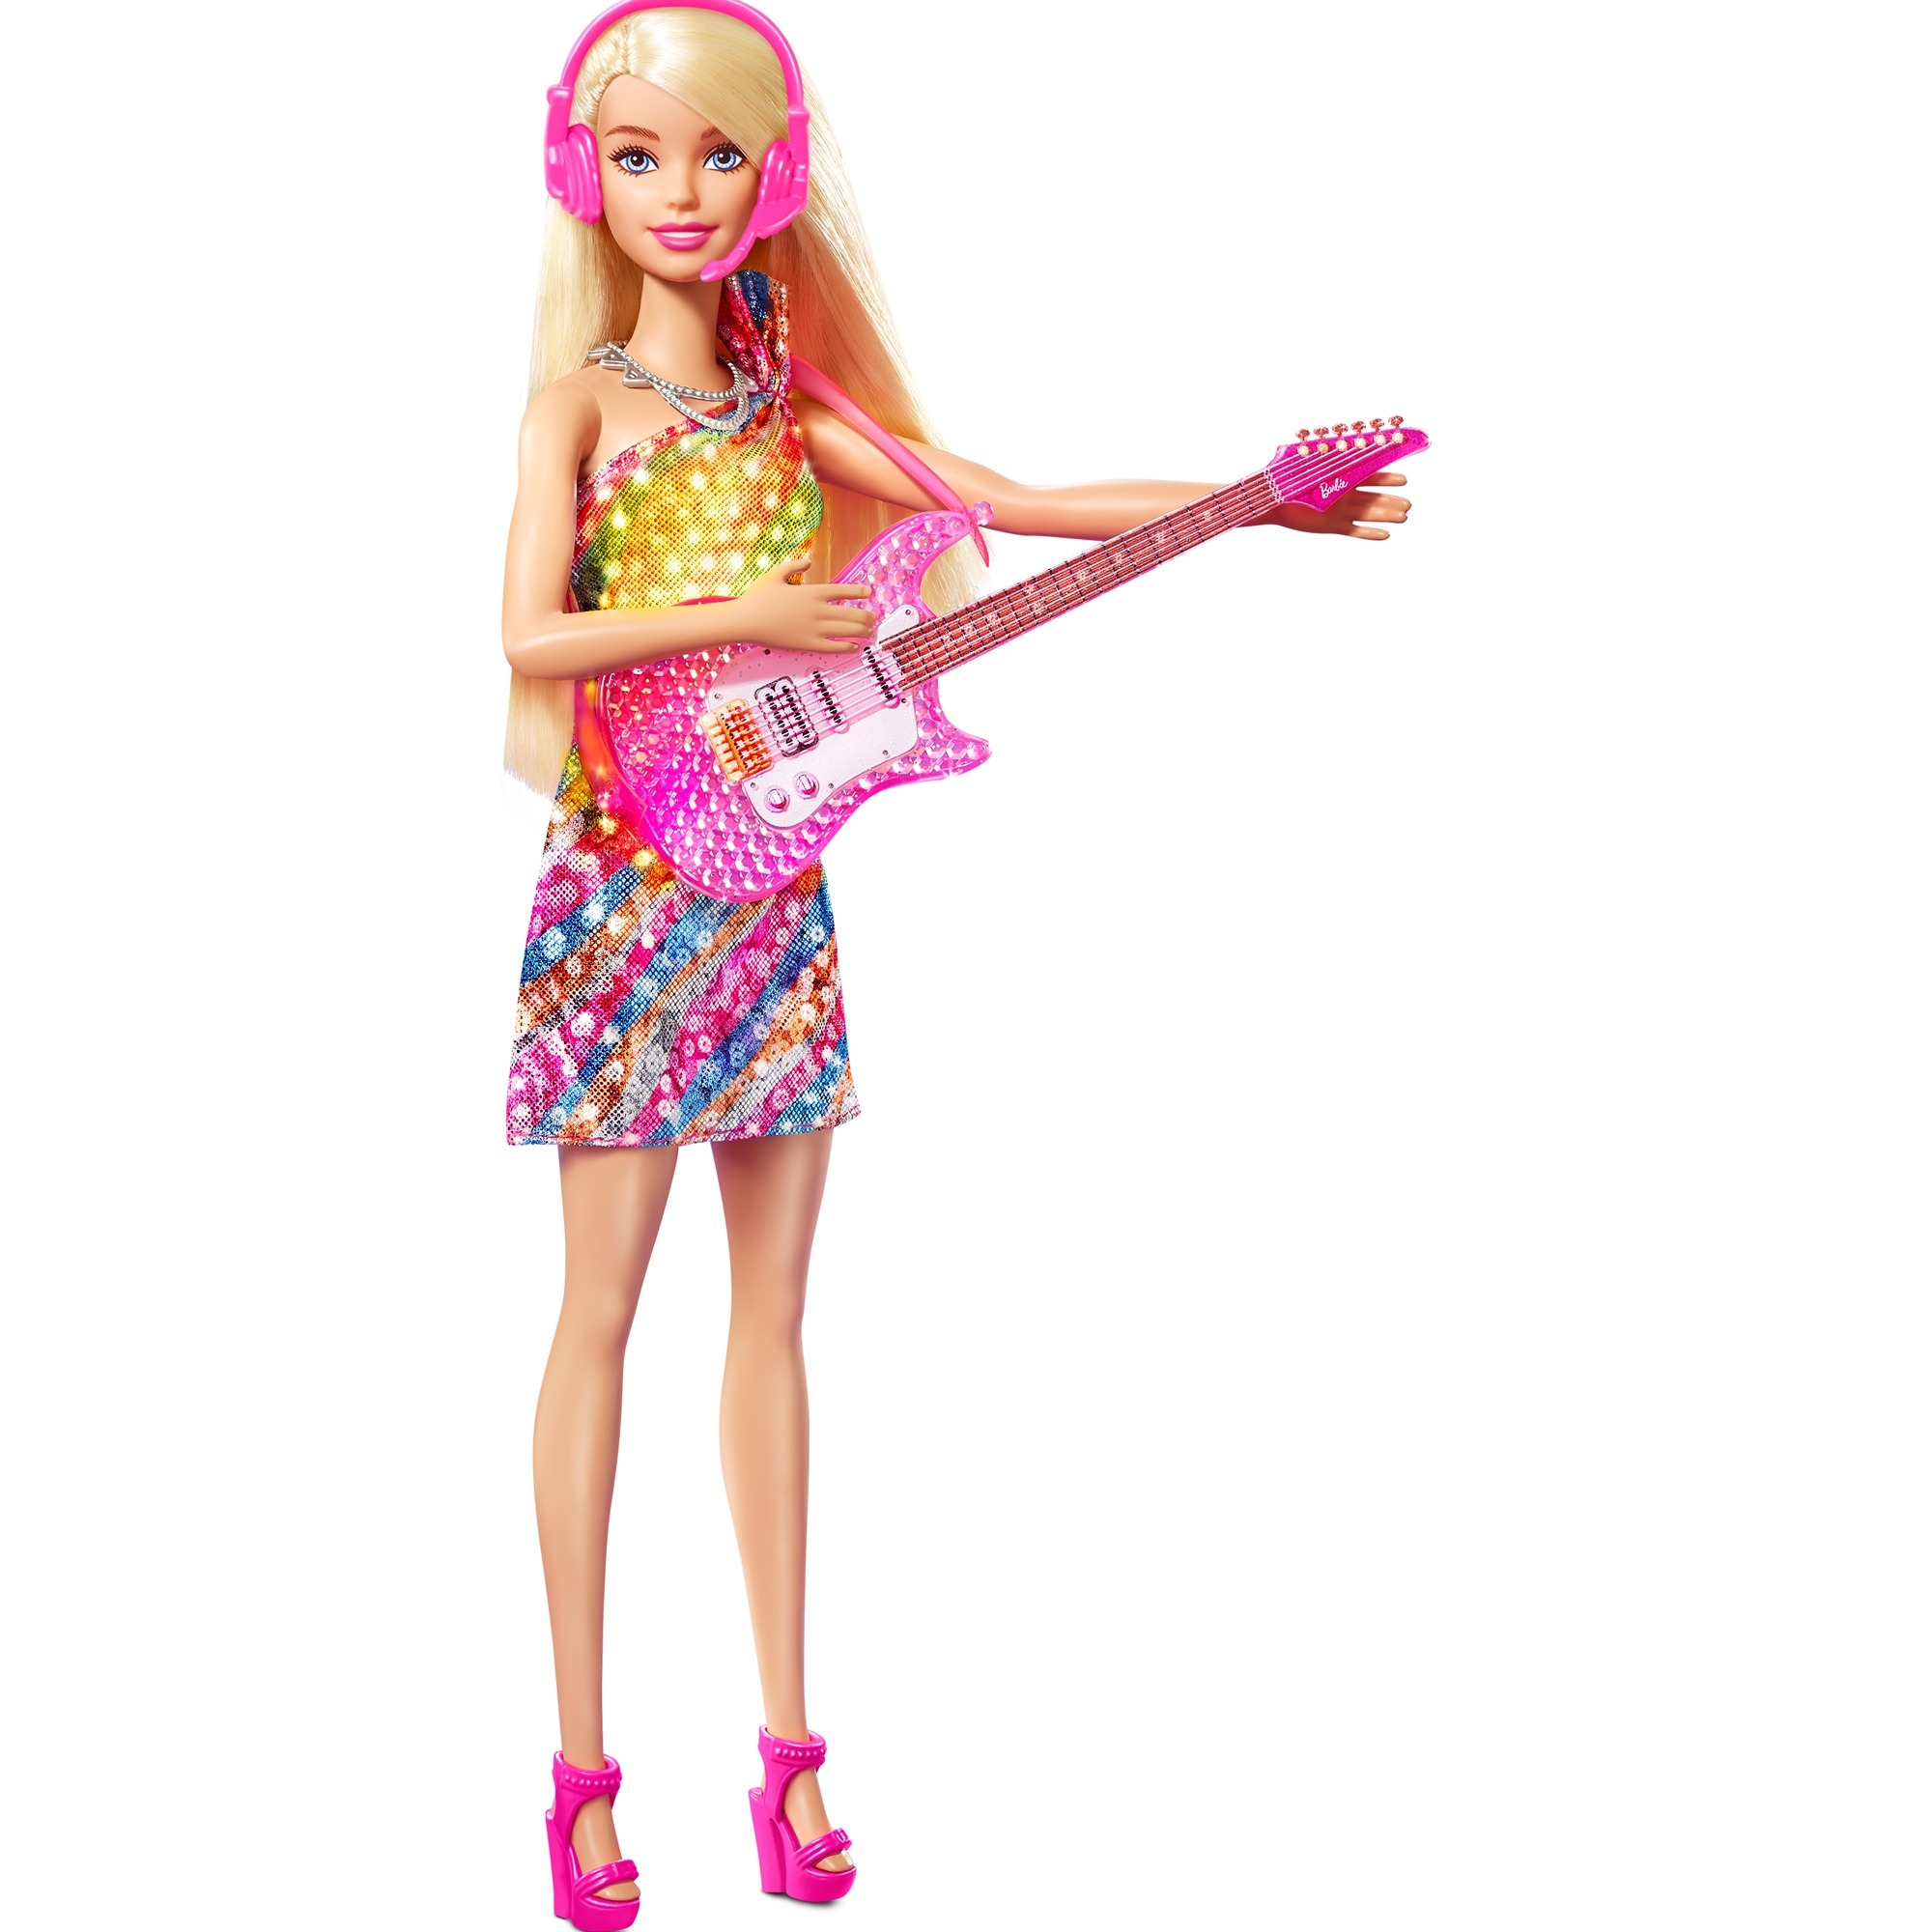 Image of Alternate - Barbie „Bühne frei für große Träume“ Malibu mit Musik, Puppe online einkaufen bei Alternate